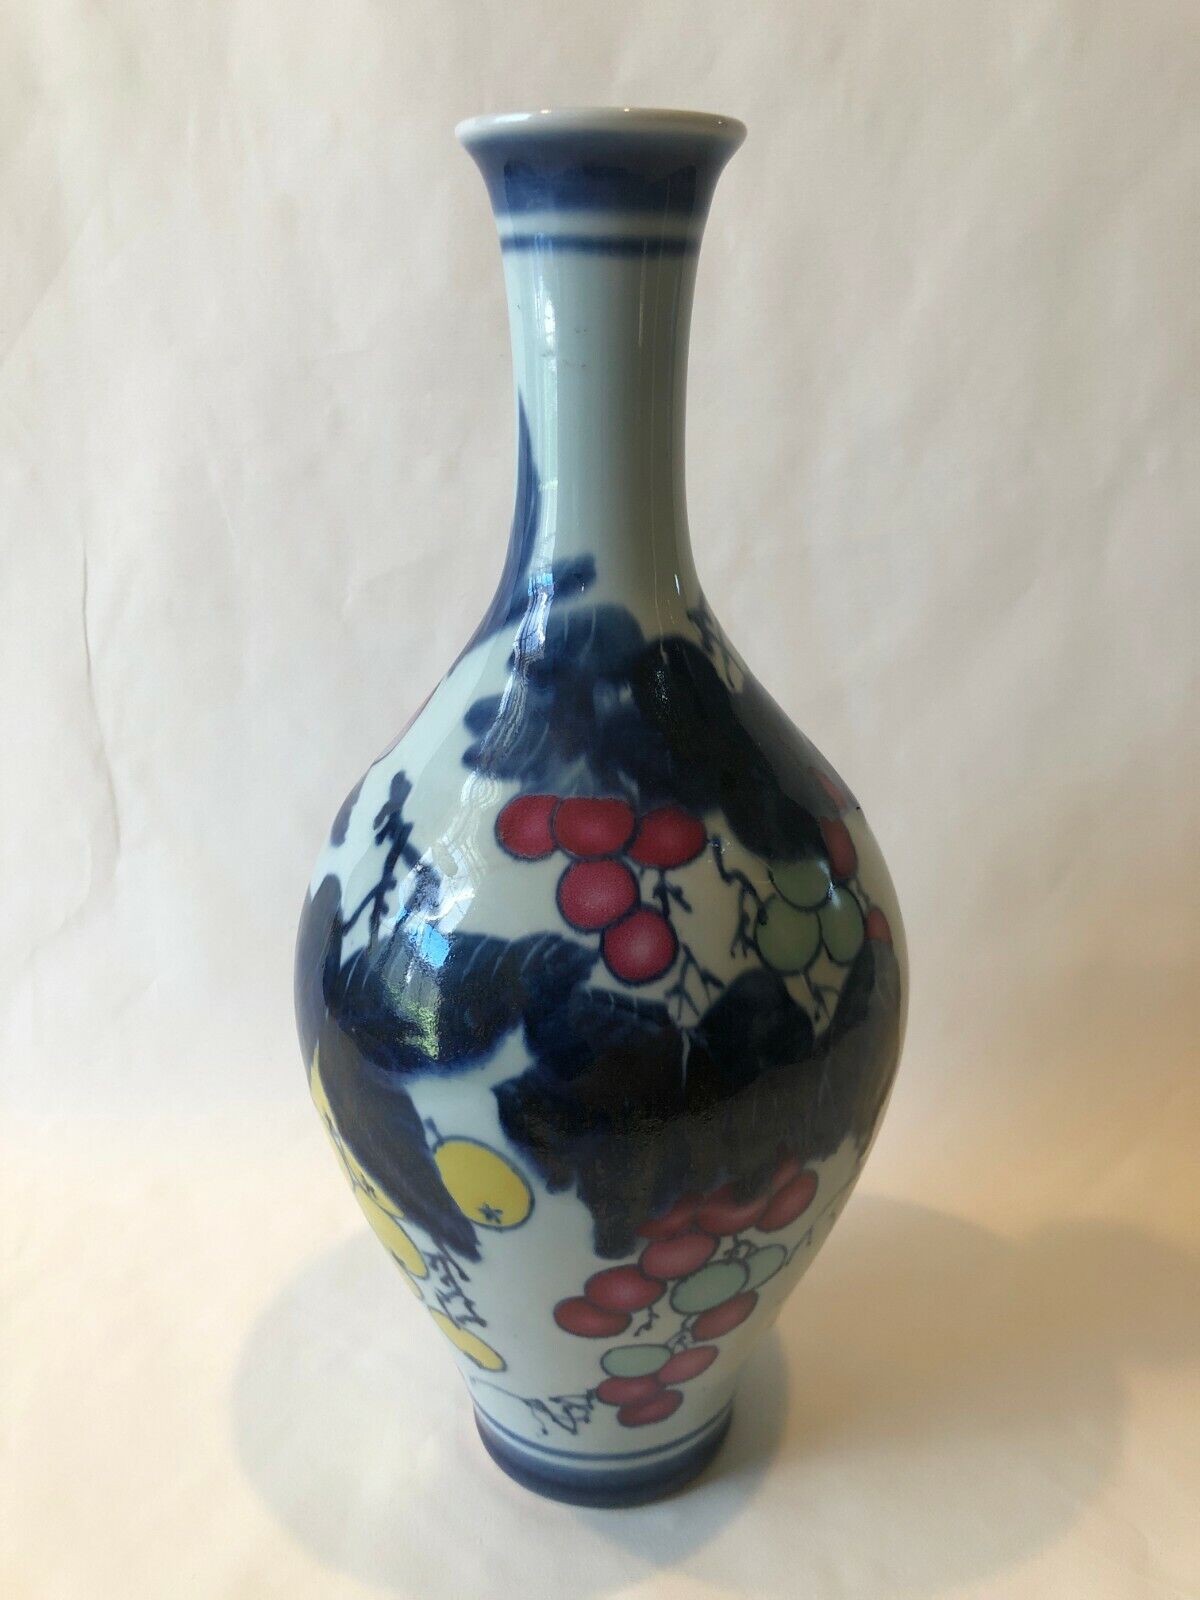 VTG Chinese Jiangxi Imitative Handpainted Fruits Glazed Porcelain Vase, Signed